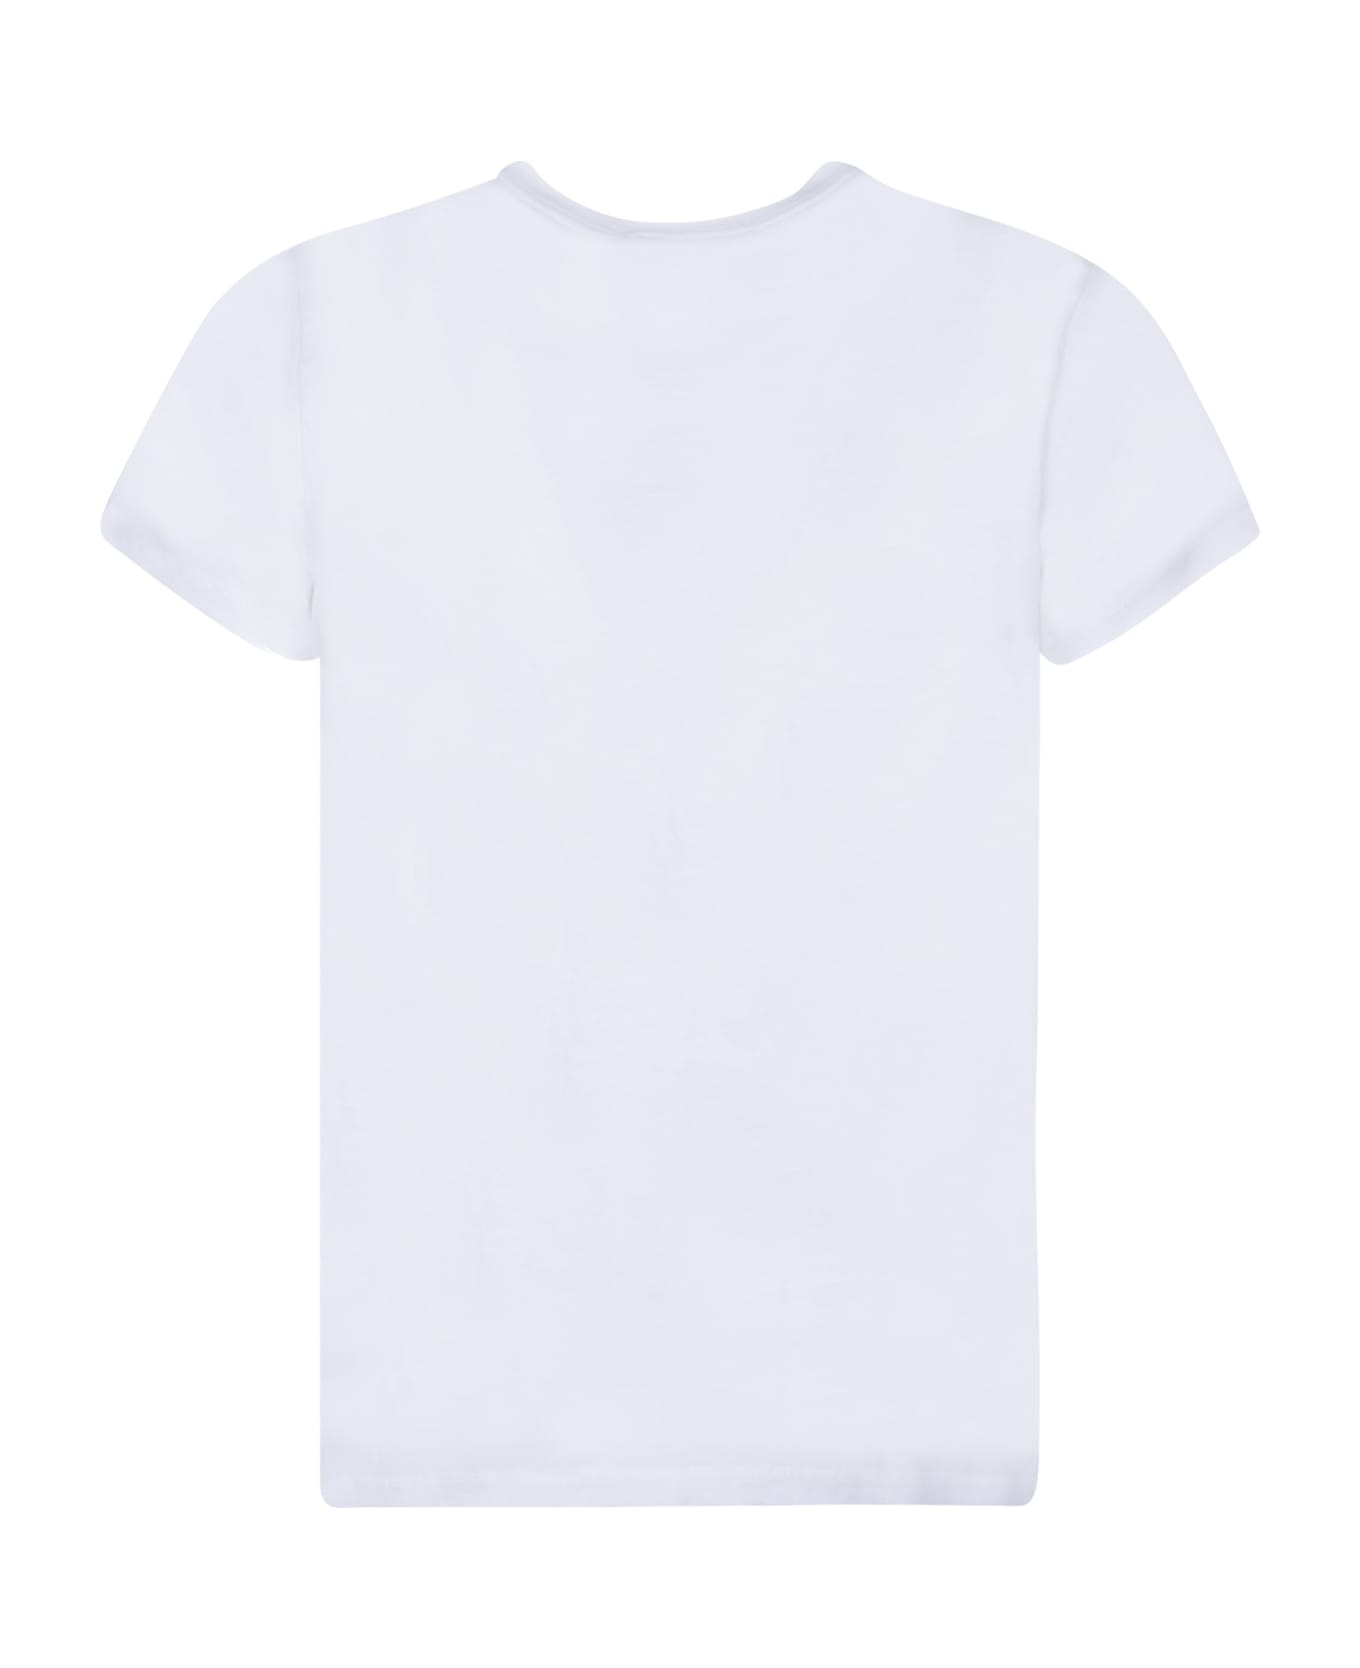 Maison Kitsuné Fox Patch T-shirt - White Tシャツ